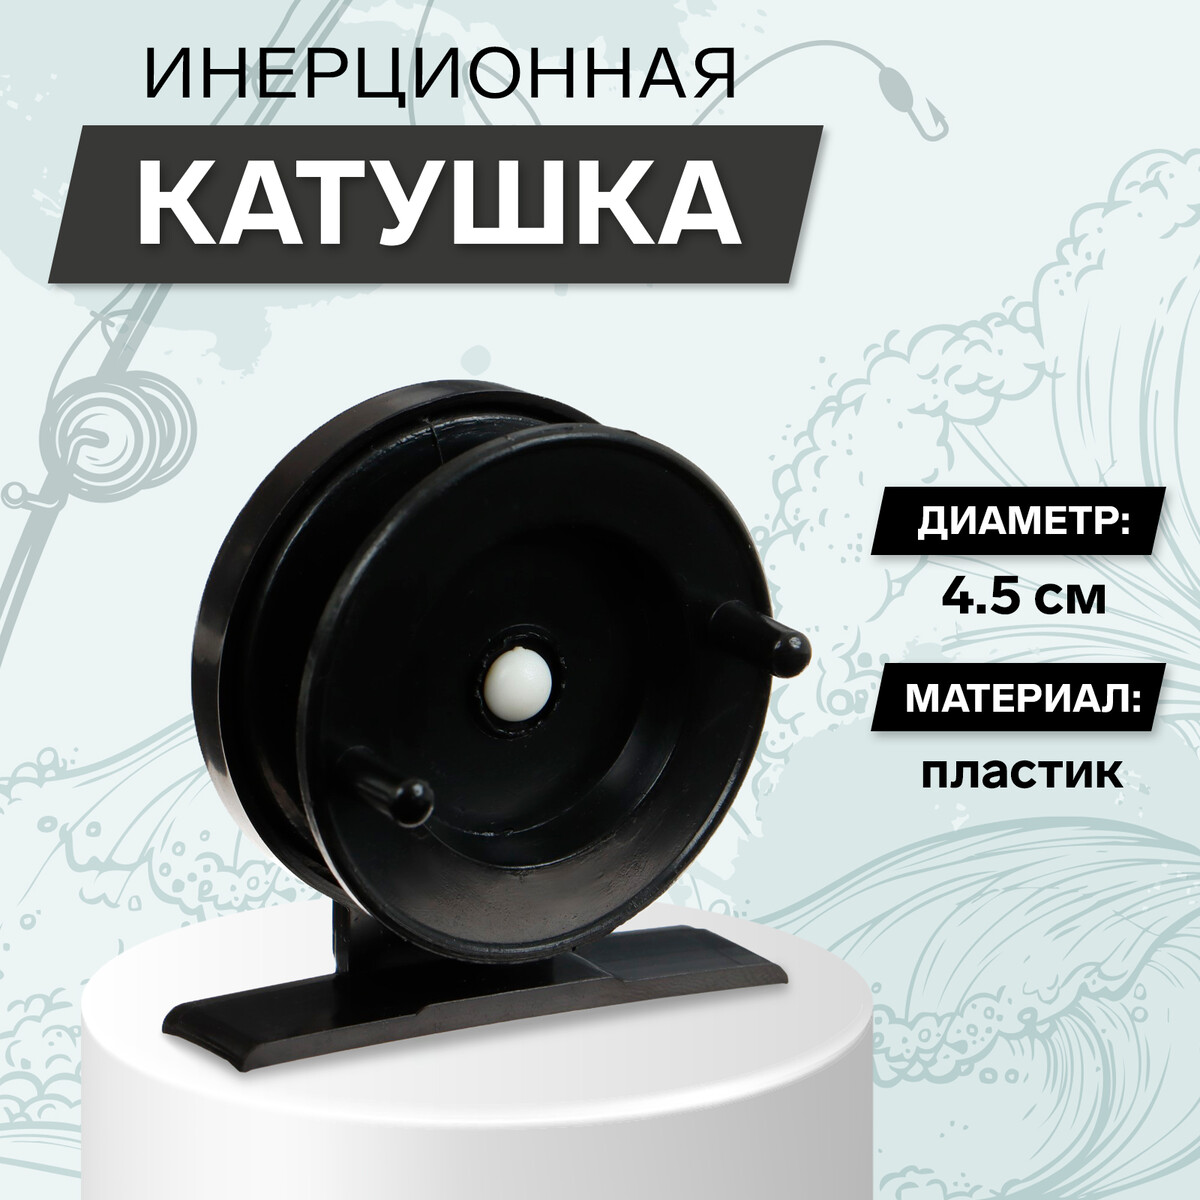 Катушка инерционная пластиковая, диаметр 4.5 см, цвет черный, 501 катушка св240 2 подшипника 5 2 1 пластиковая шпуля